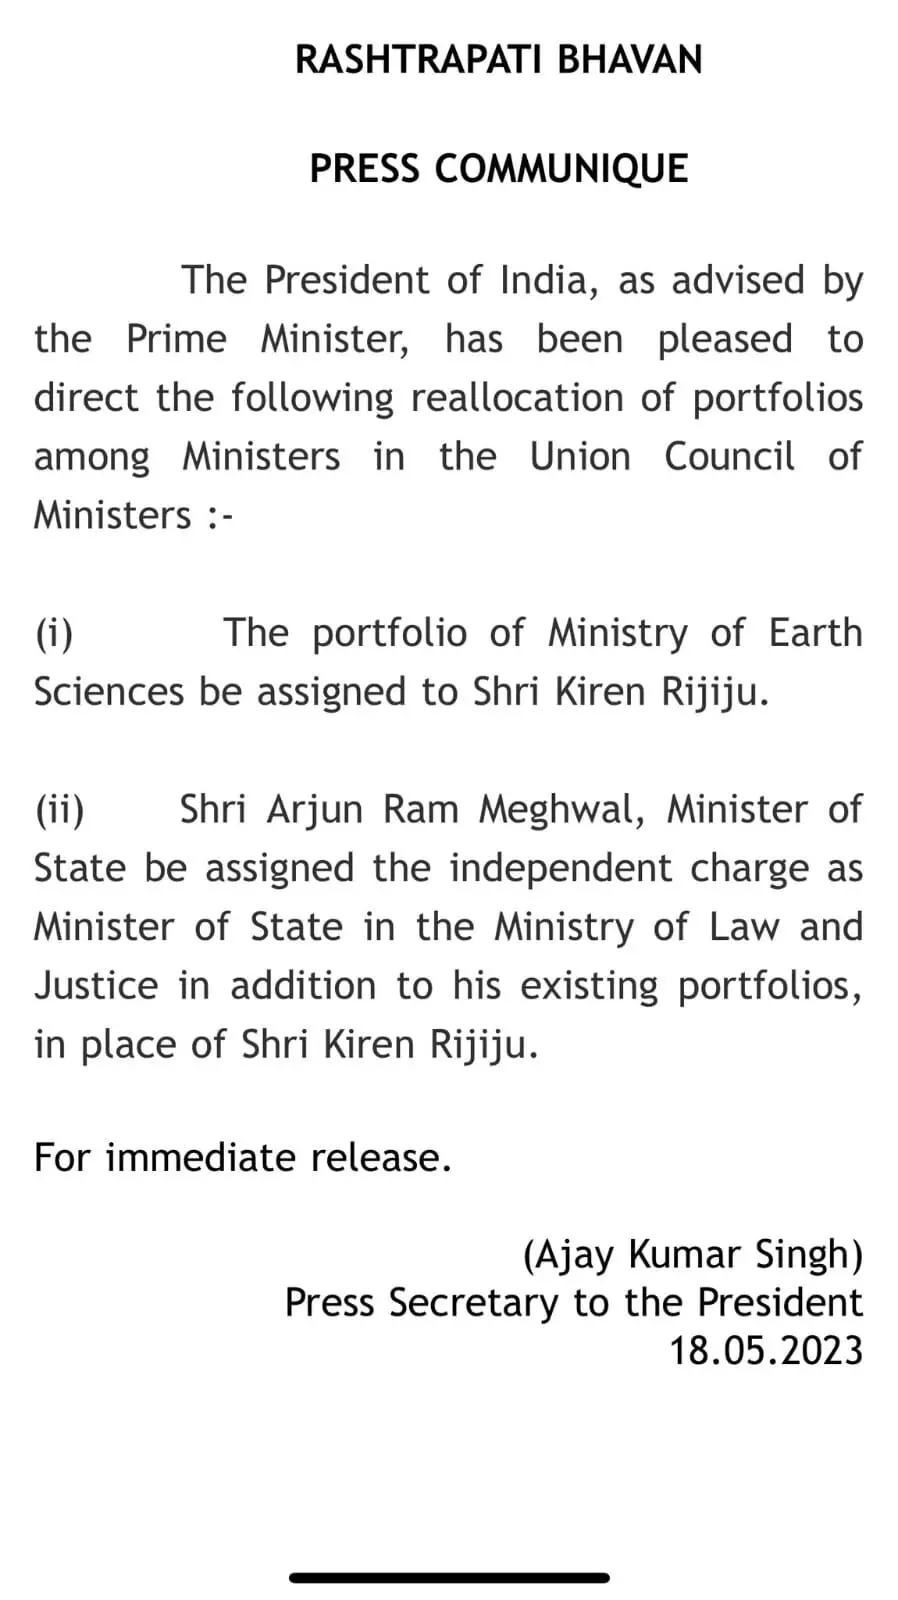 किरेन रिजिजू का विभाग बदला गया, अर्जुन राम मेघवाल होंगे केंद्रीय कानून मंत्री